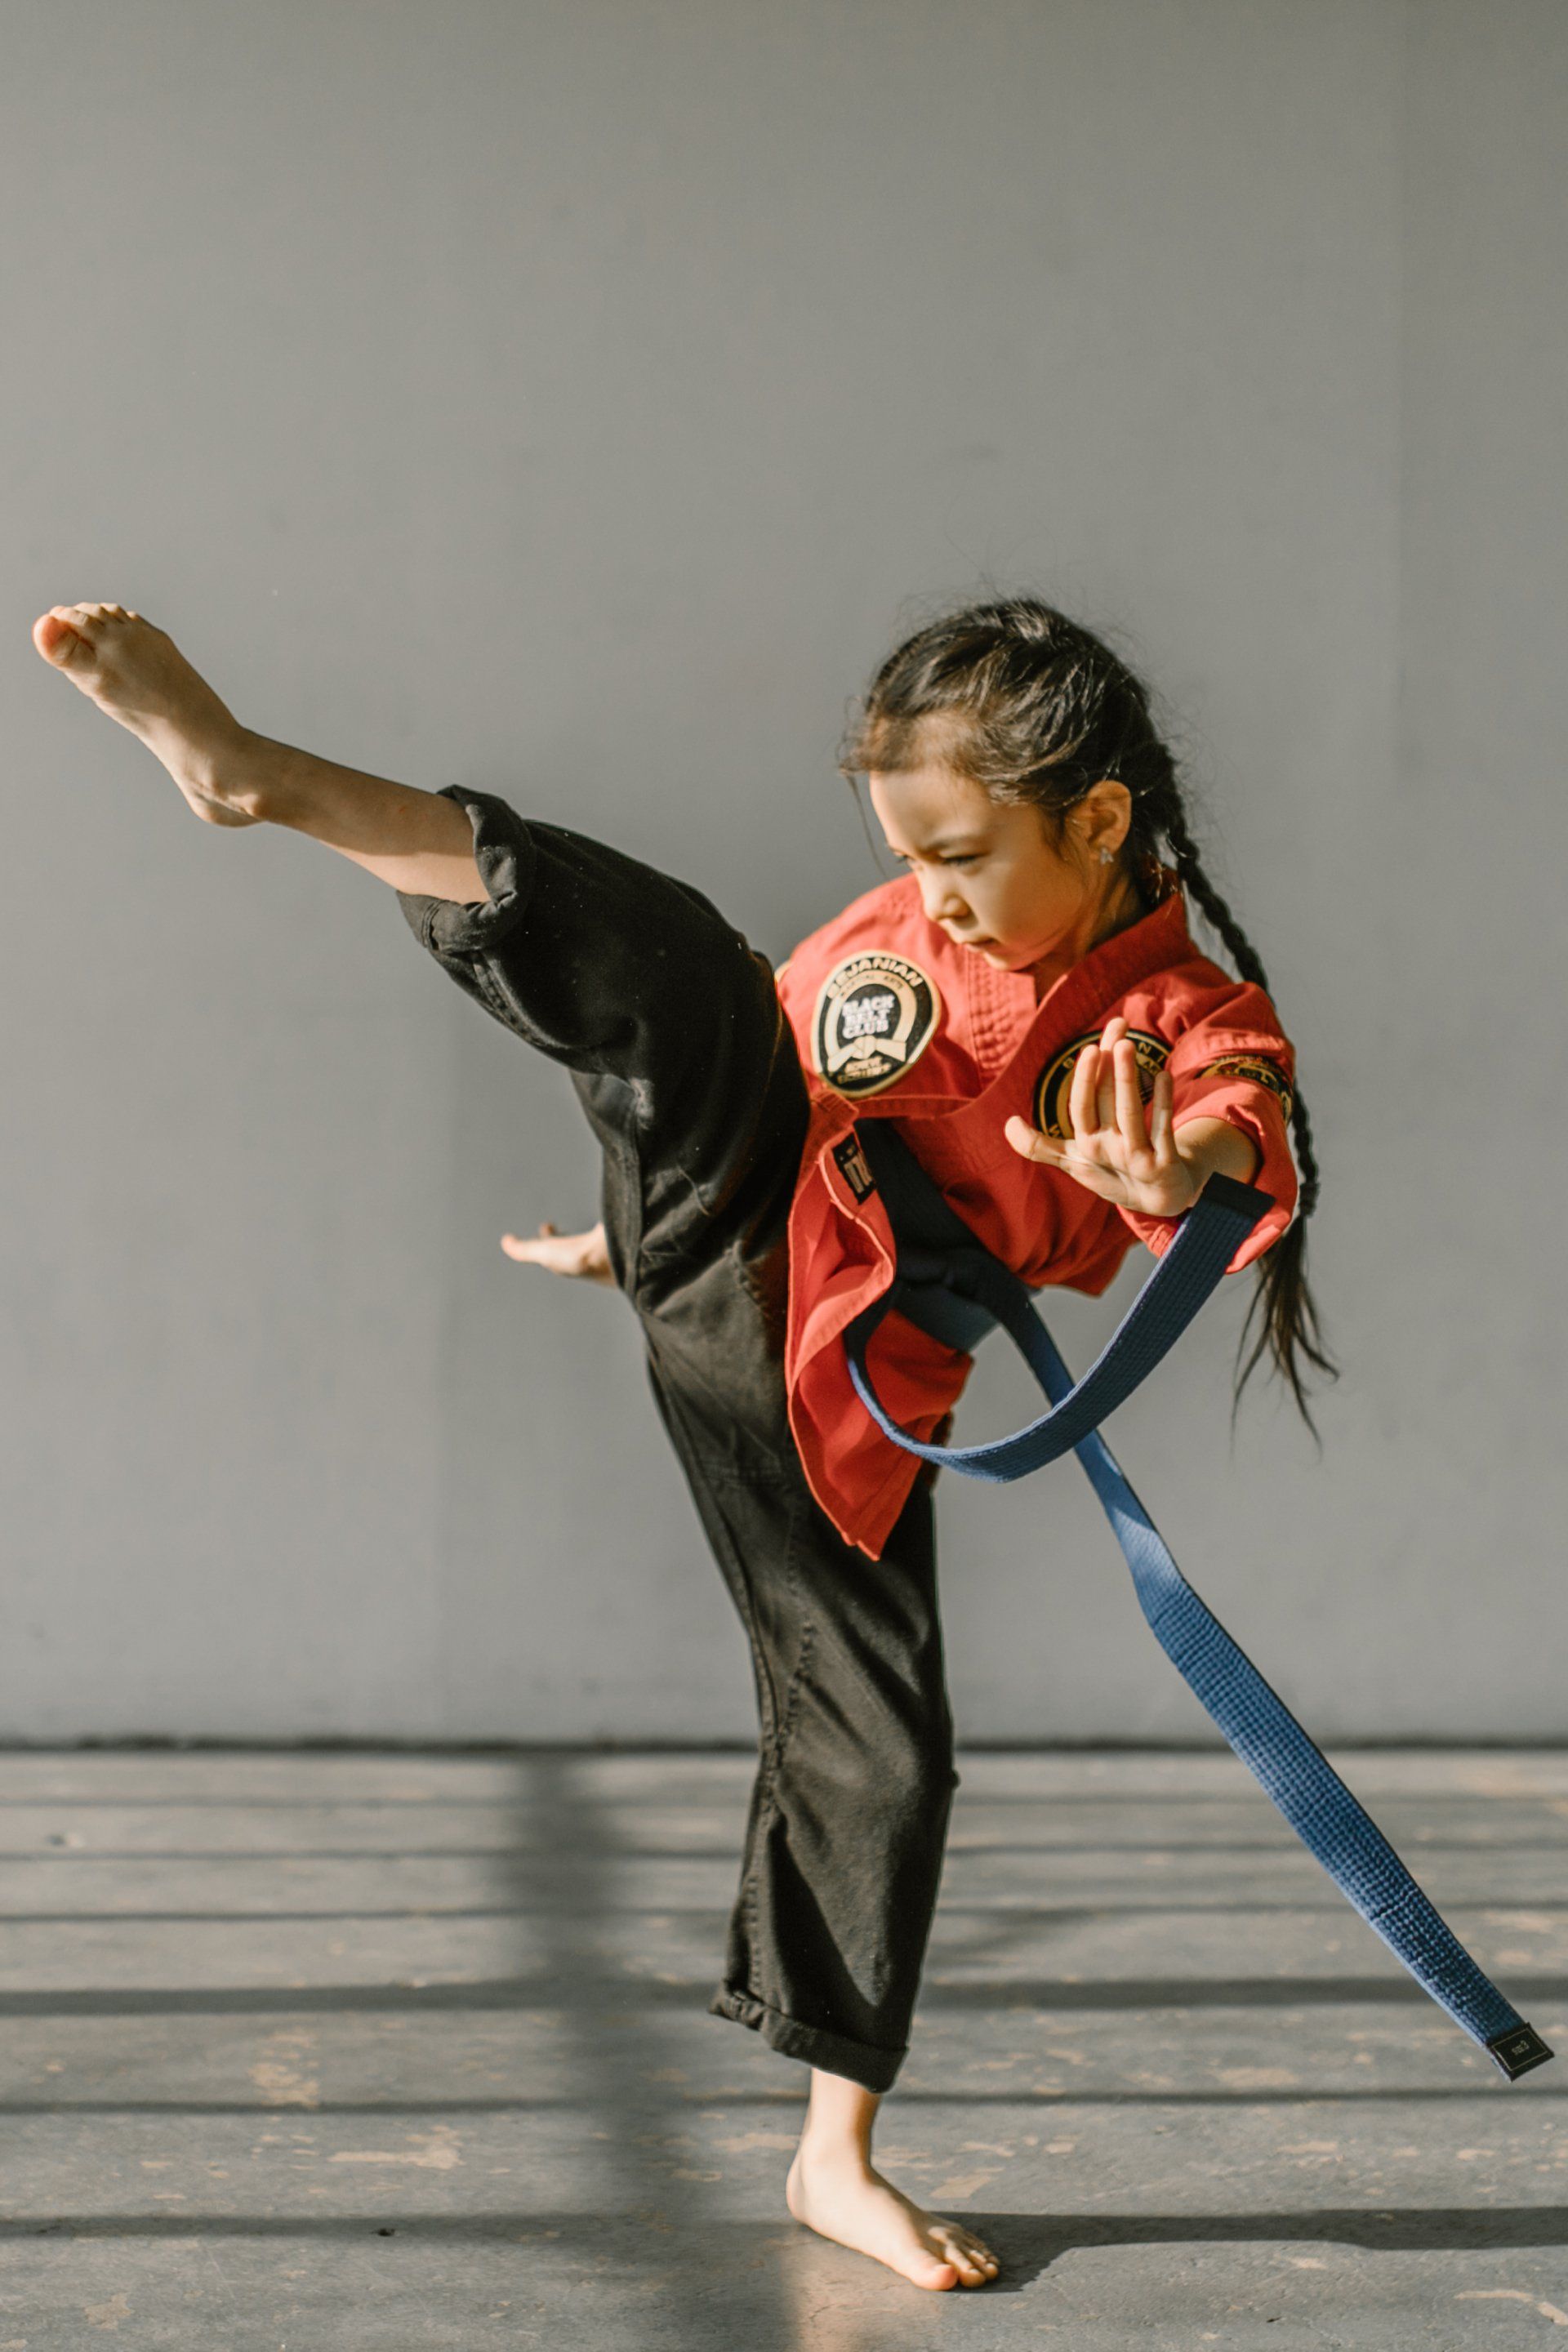 Een jong meisje beoefent karate met een blauwe band.